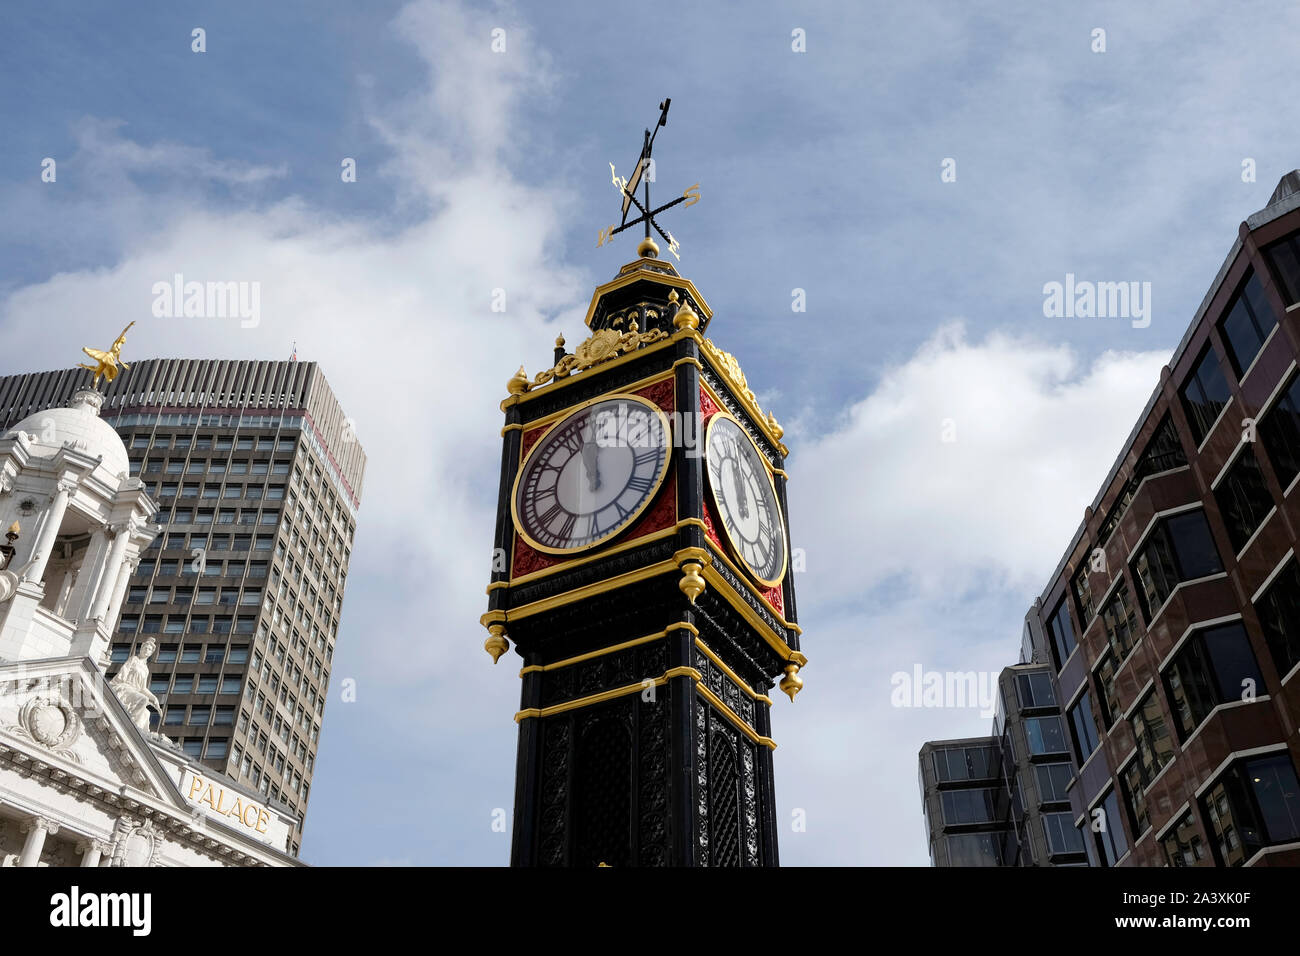 Wenig Ben, eine Gusseiserne miniatur Clock Tower außerhalb der Victoria Station in London, Großbritannien Stockfoto